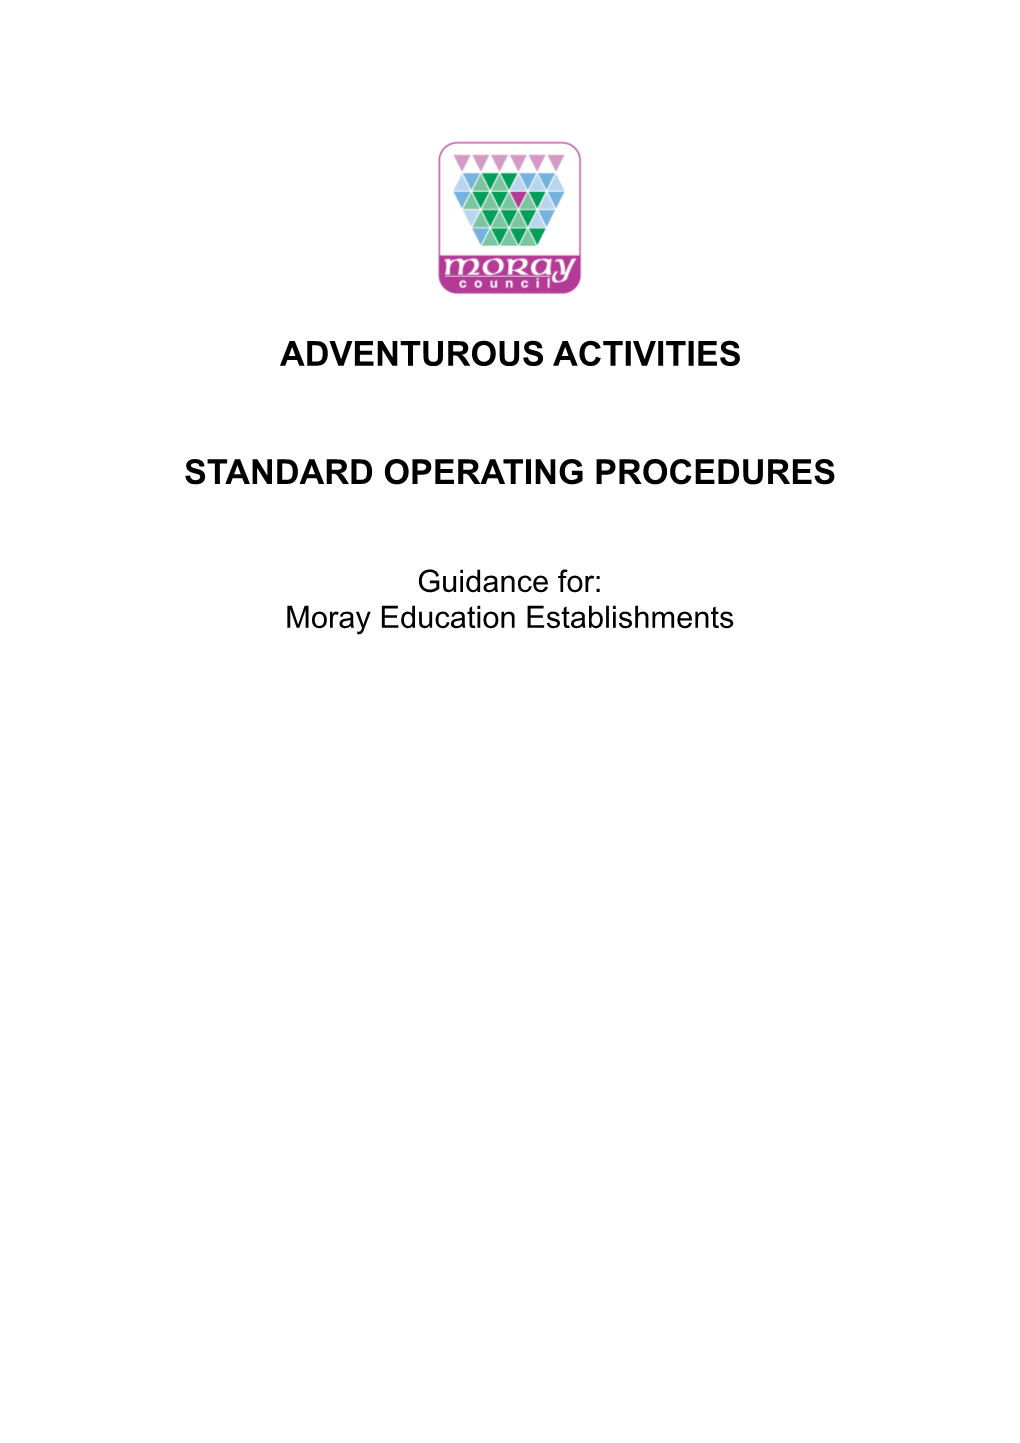 Adventurous Activities Standard Operating